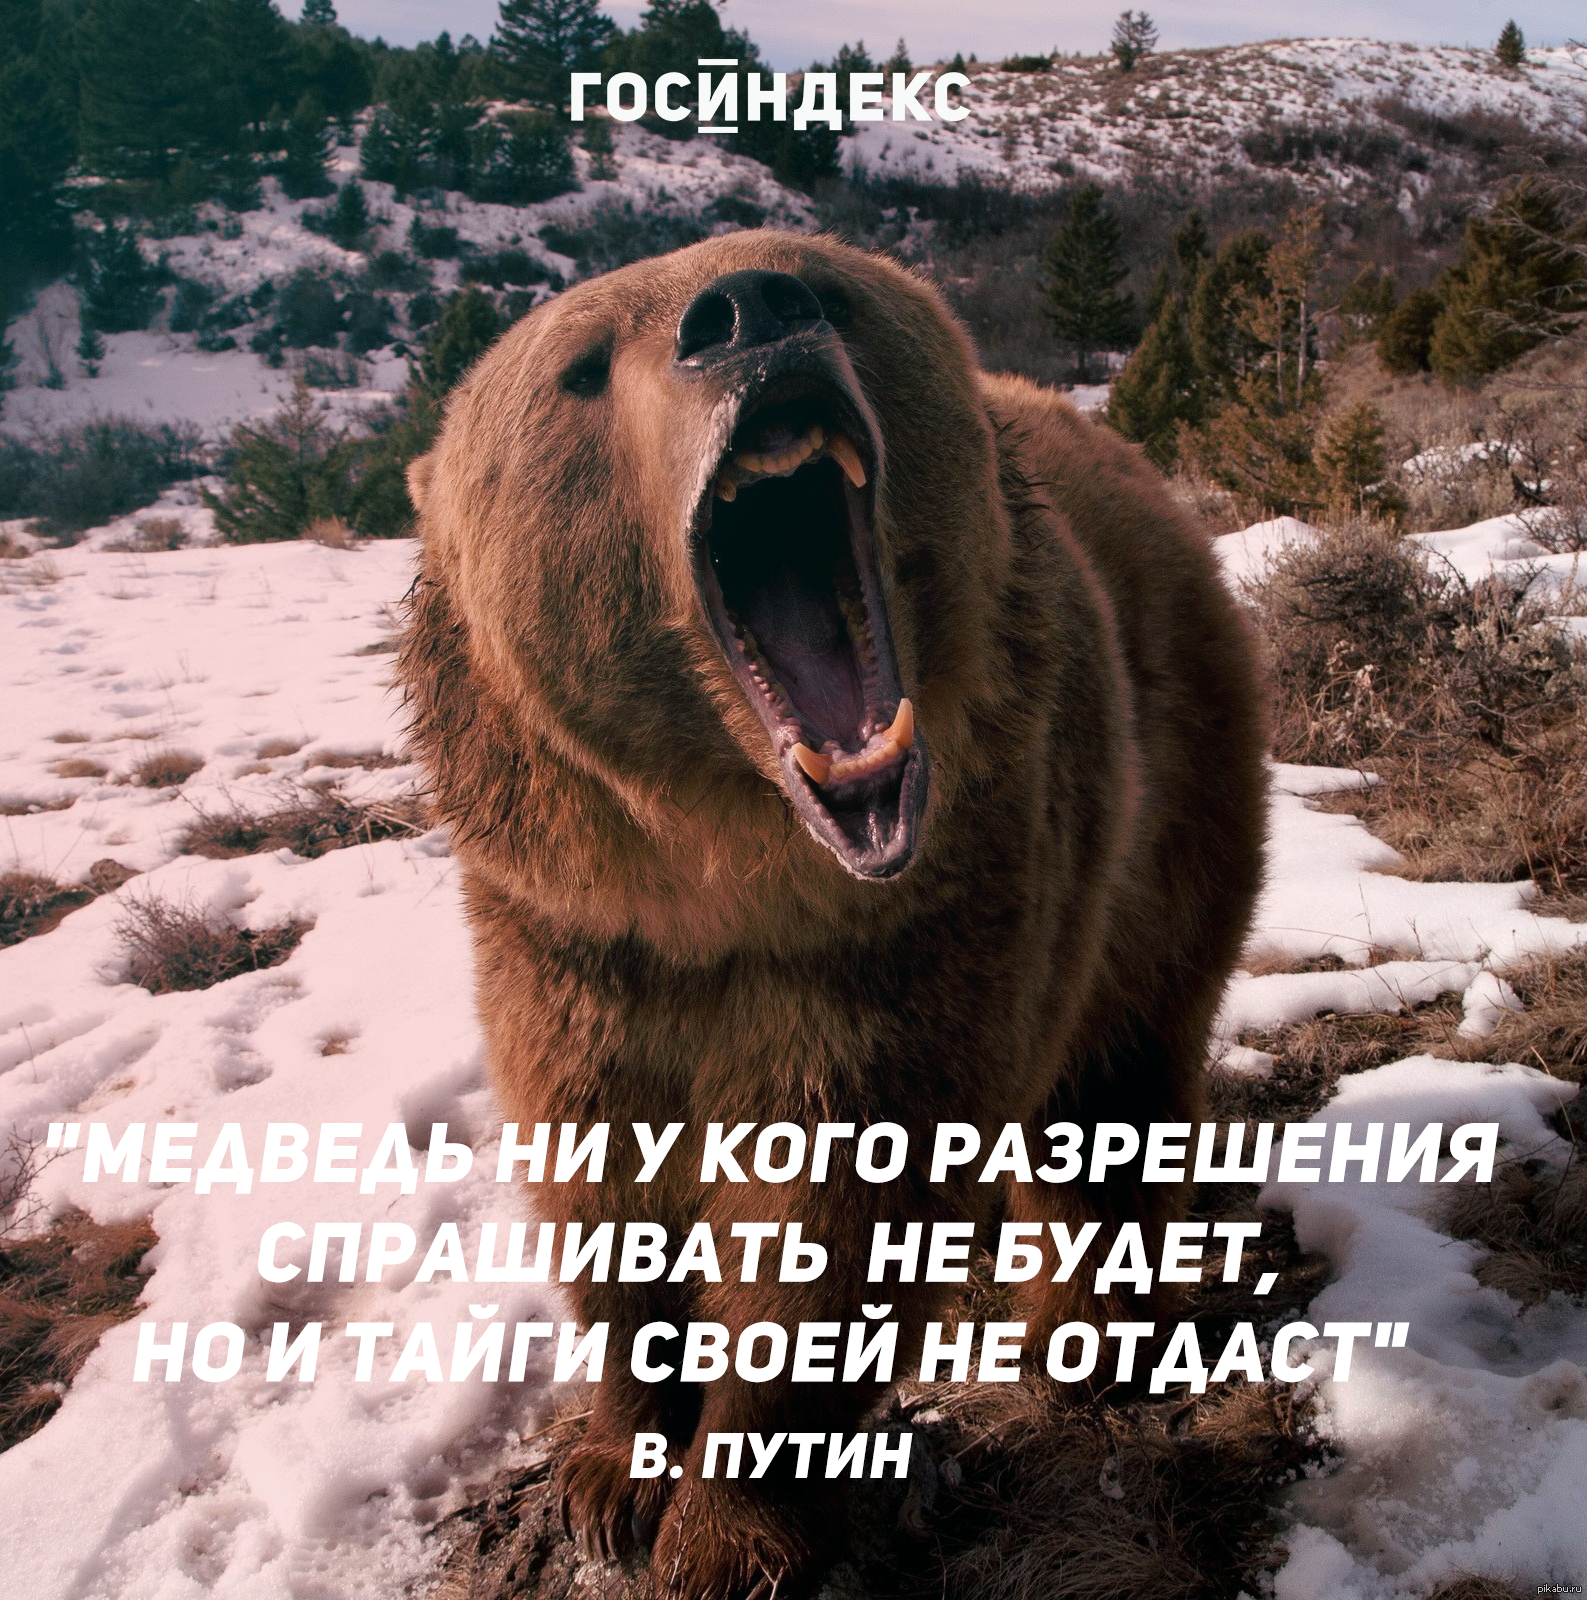 5dd0d3377687c - Пословицы про медведя